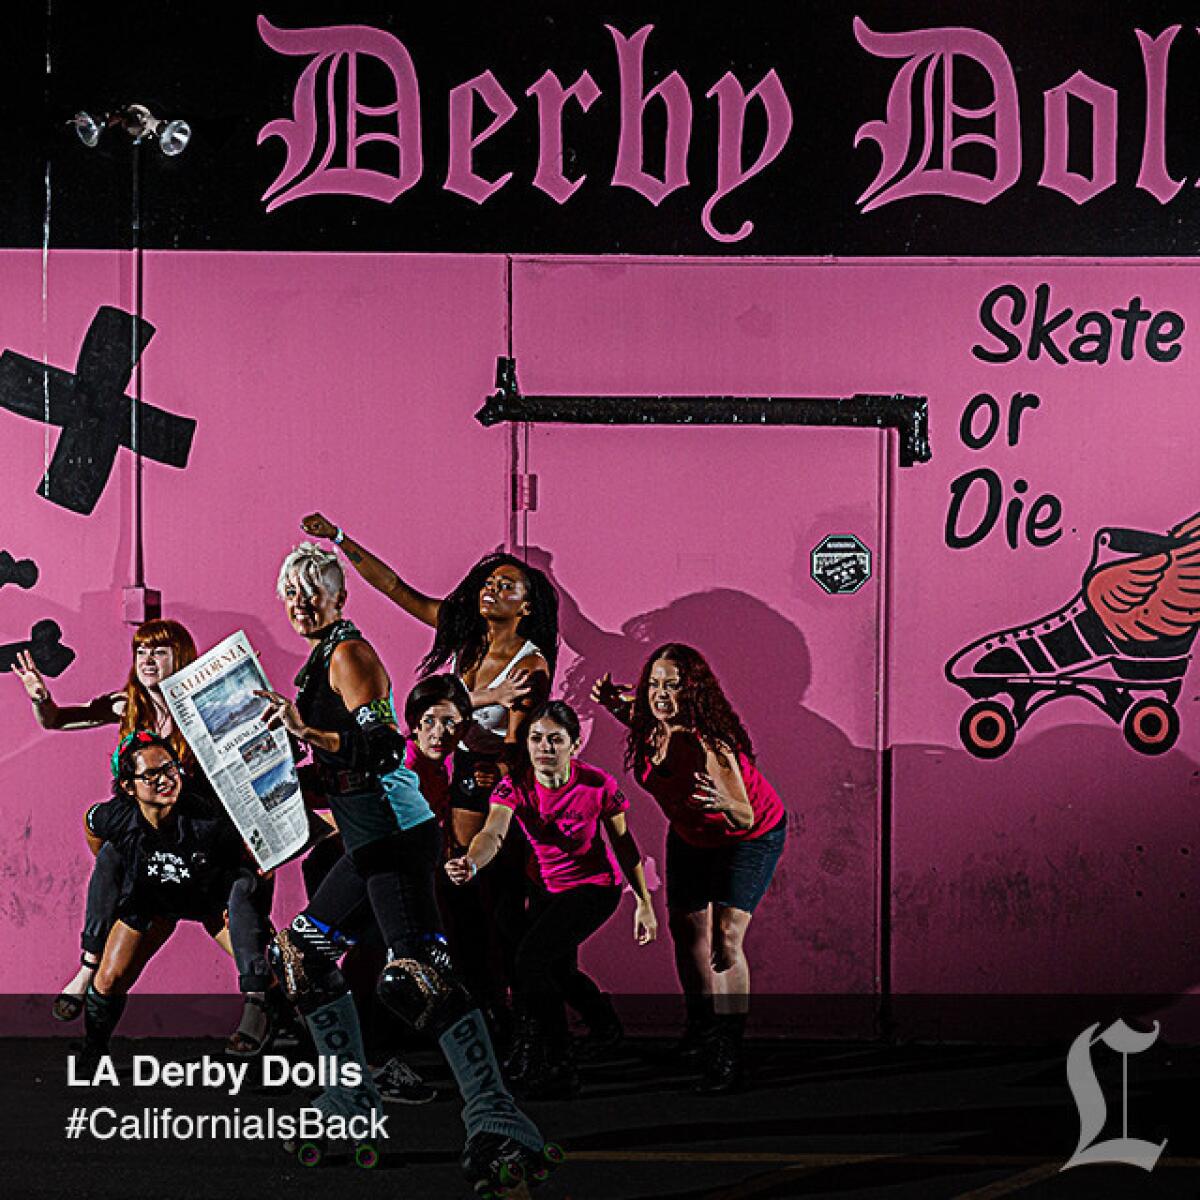 Gori Spelling, LA Derby Dolls.